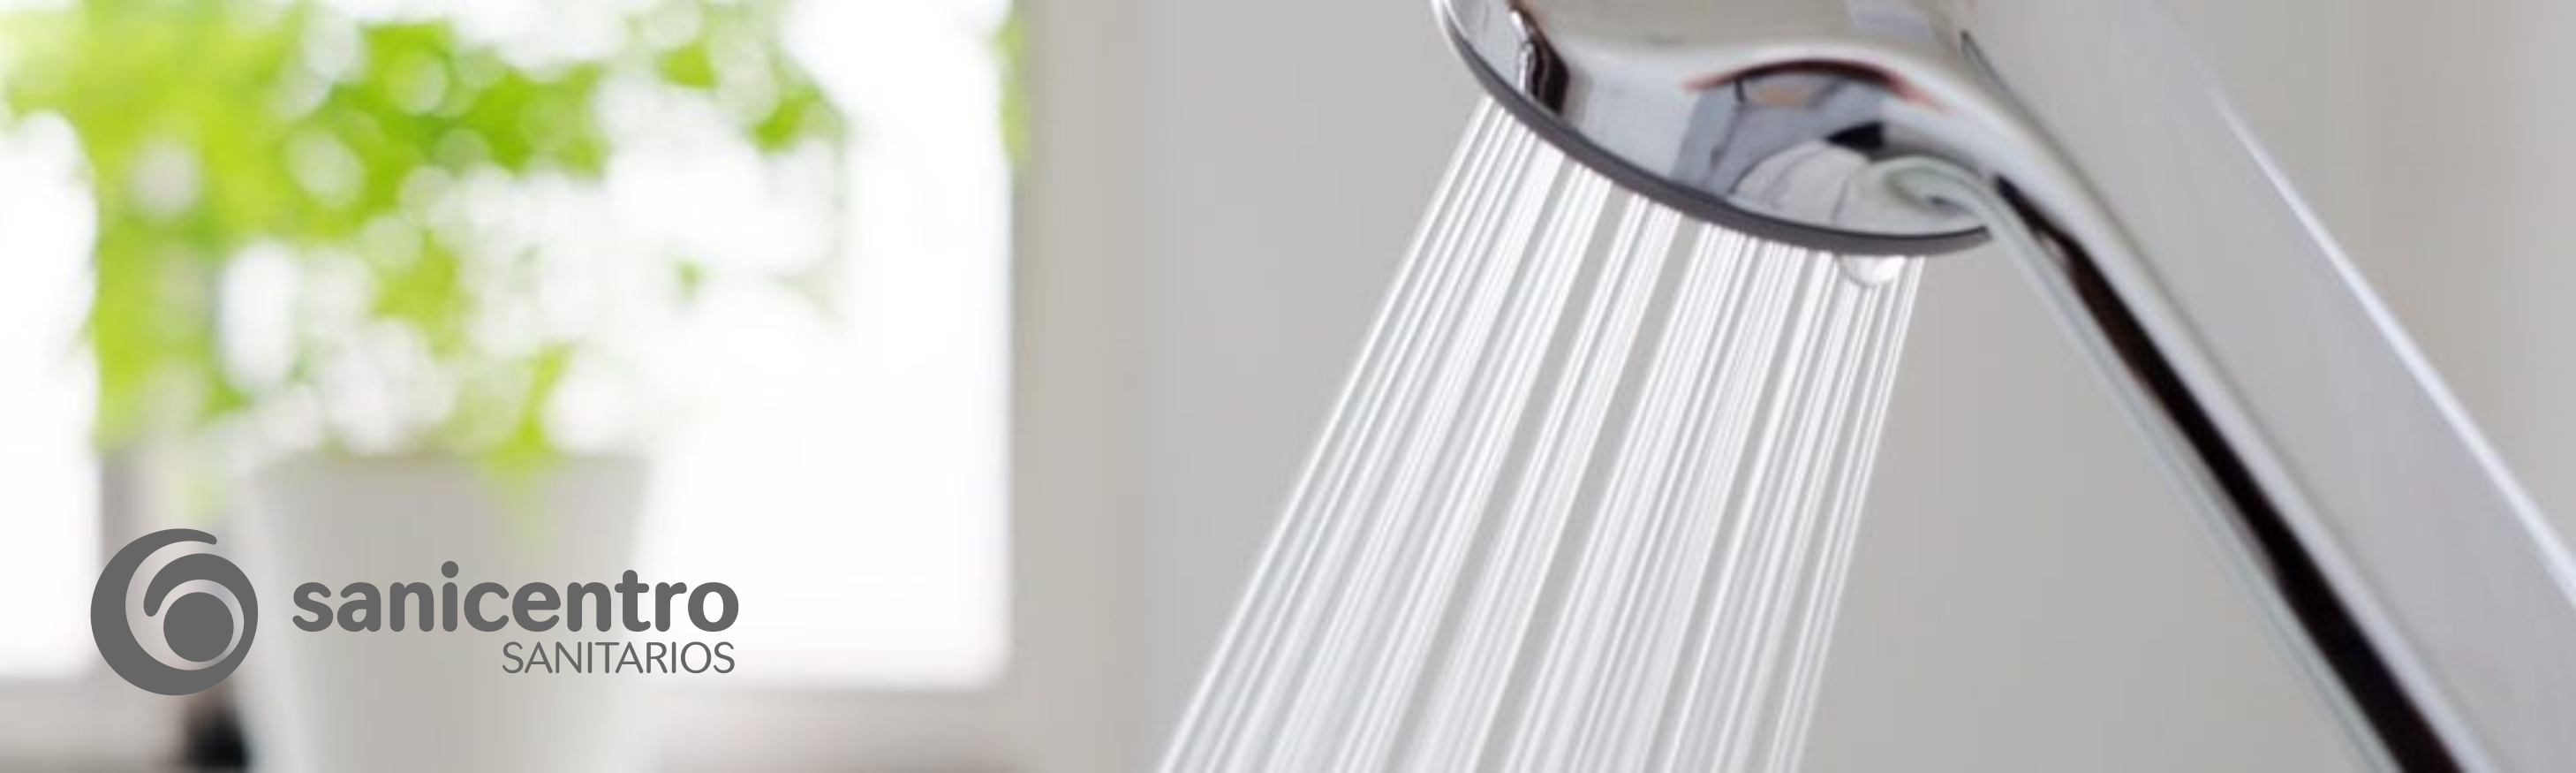 Adelantar lámpara límite Cómo aumentar la presión del agua en la ducha? - Sanicentro